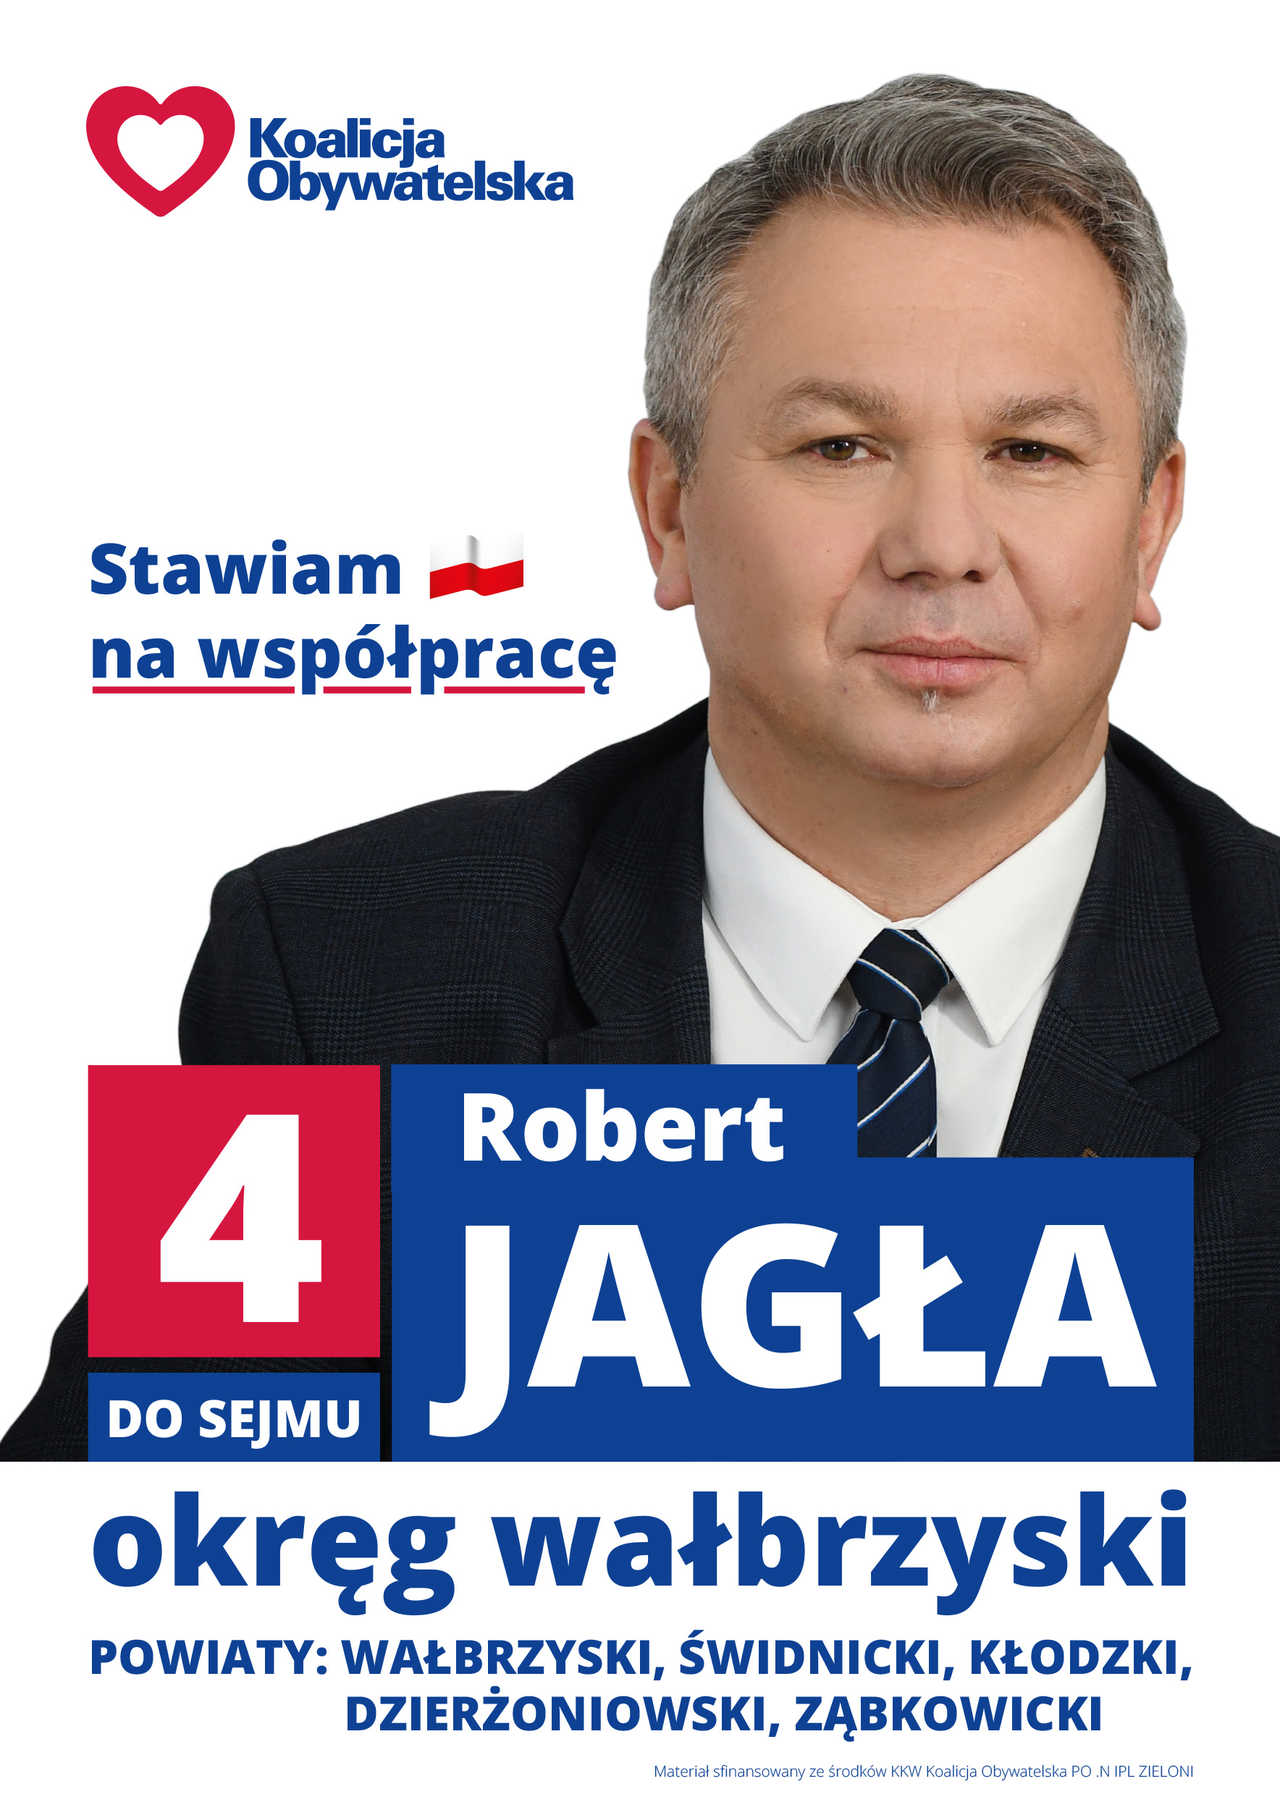 [FOTO, WIDEO] Robert Jagła liderem powiatu świdnickiego z ramienia Koalicji Obywatelskiej